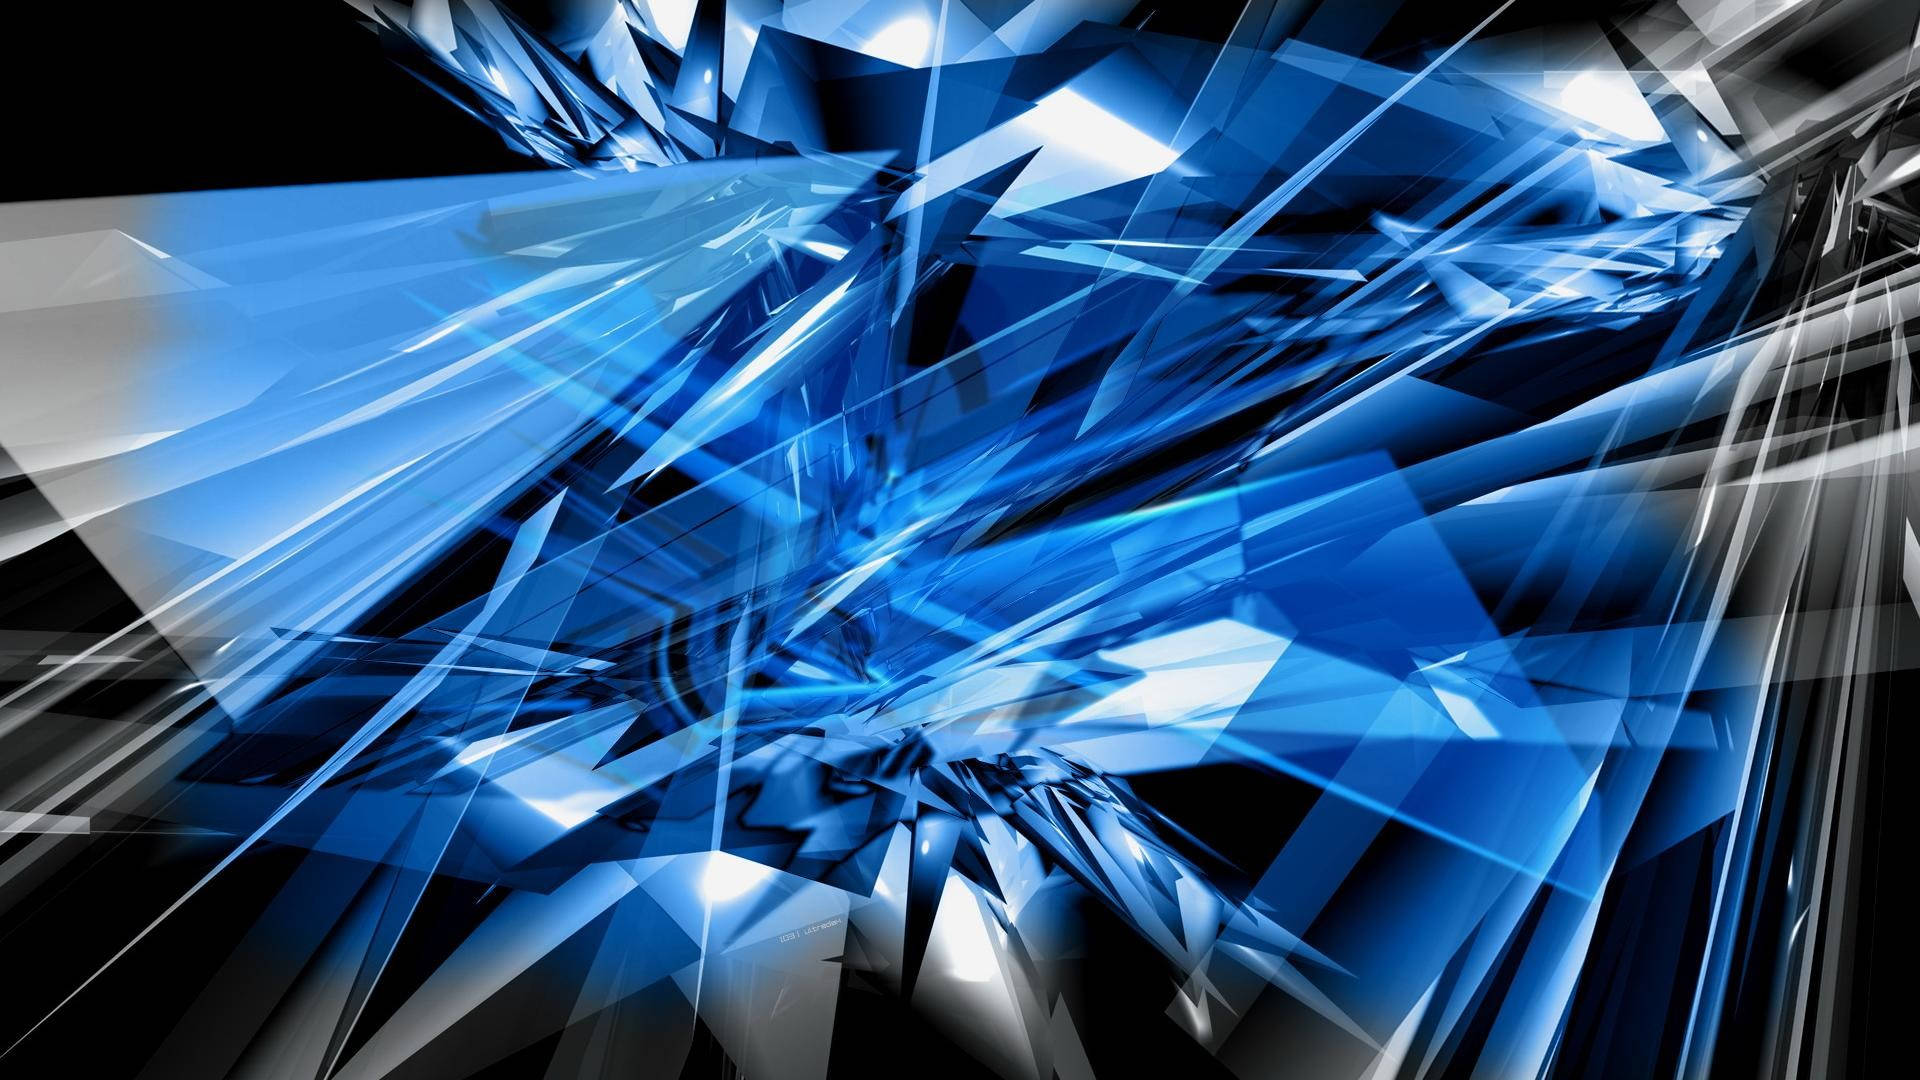 Cool Blue Glass Shards Wallpaper